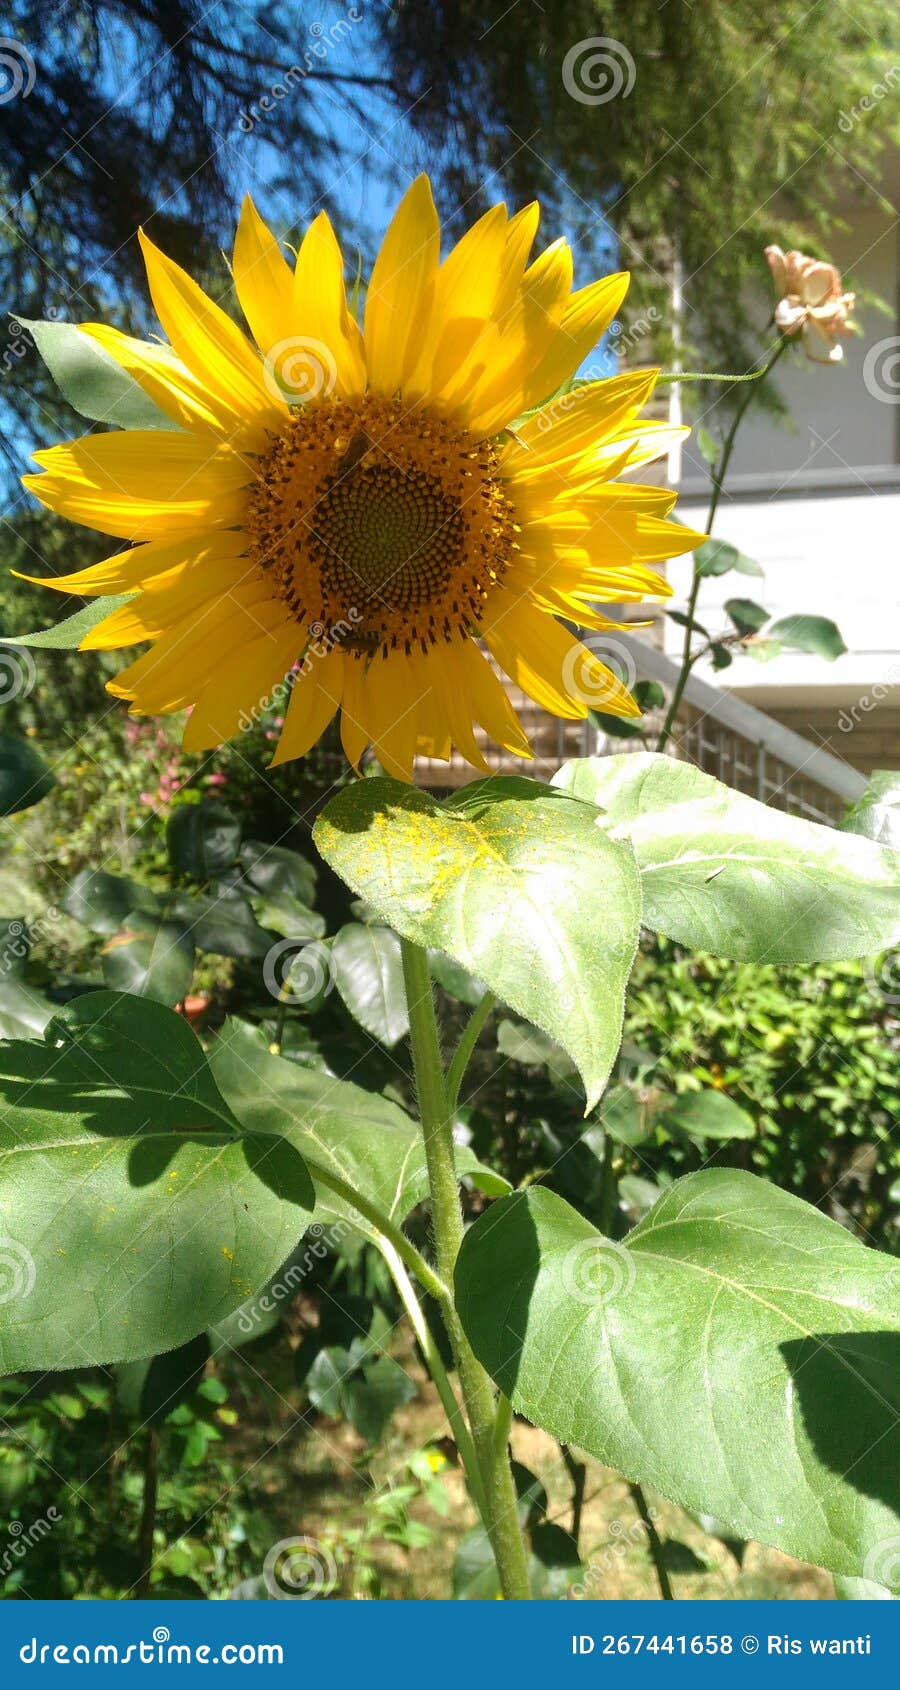 common sunflower blossom with bees, helianthus annuus. fiori di girasole comune con le api.